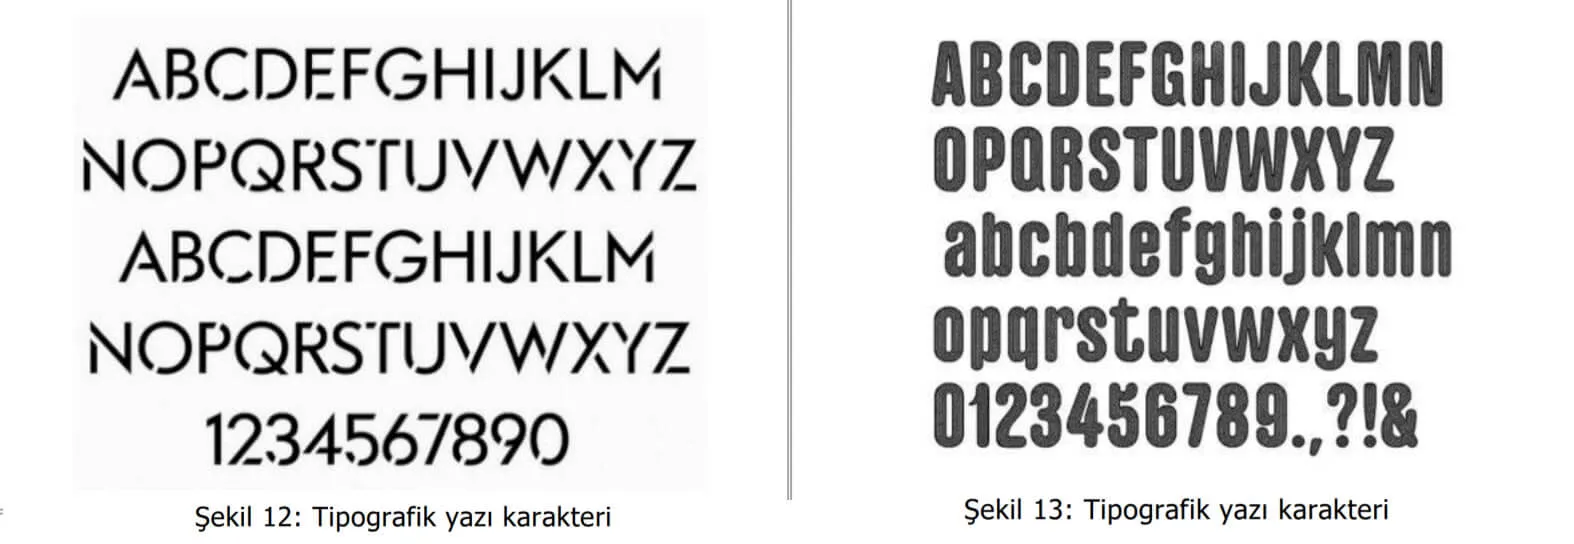 tipografik yazı karakter örnekleri-kadıköy web tasarım